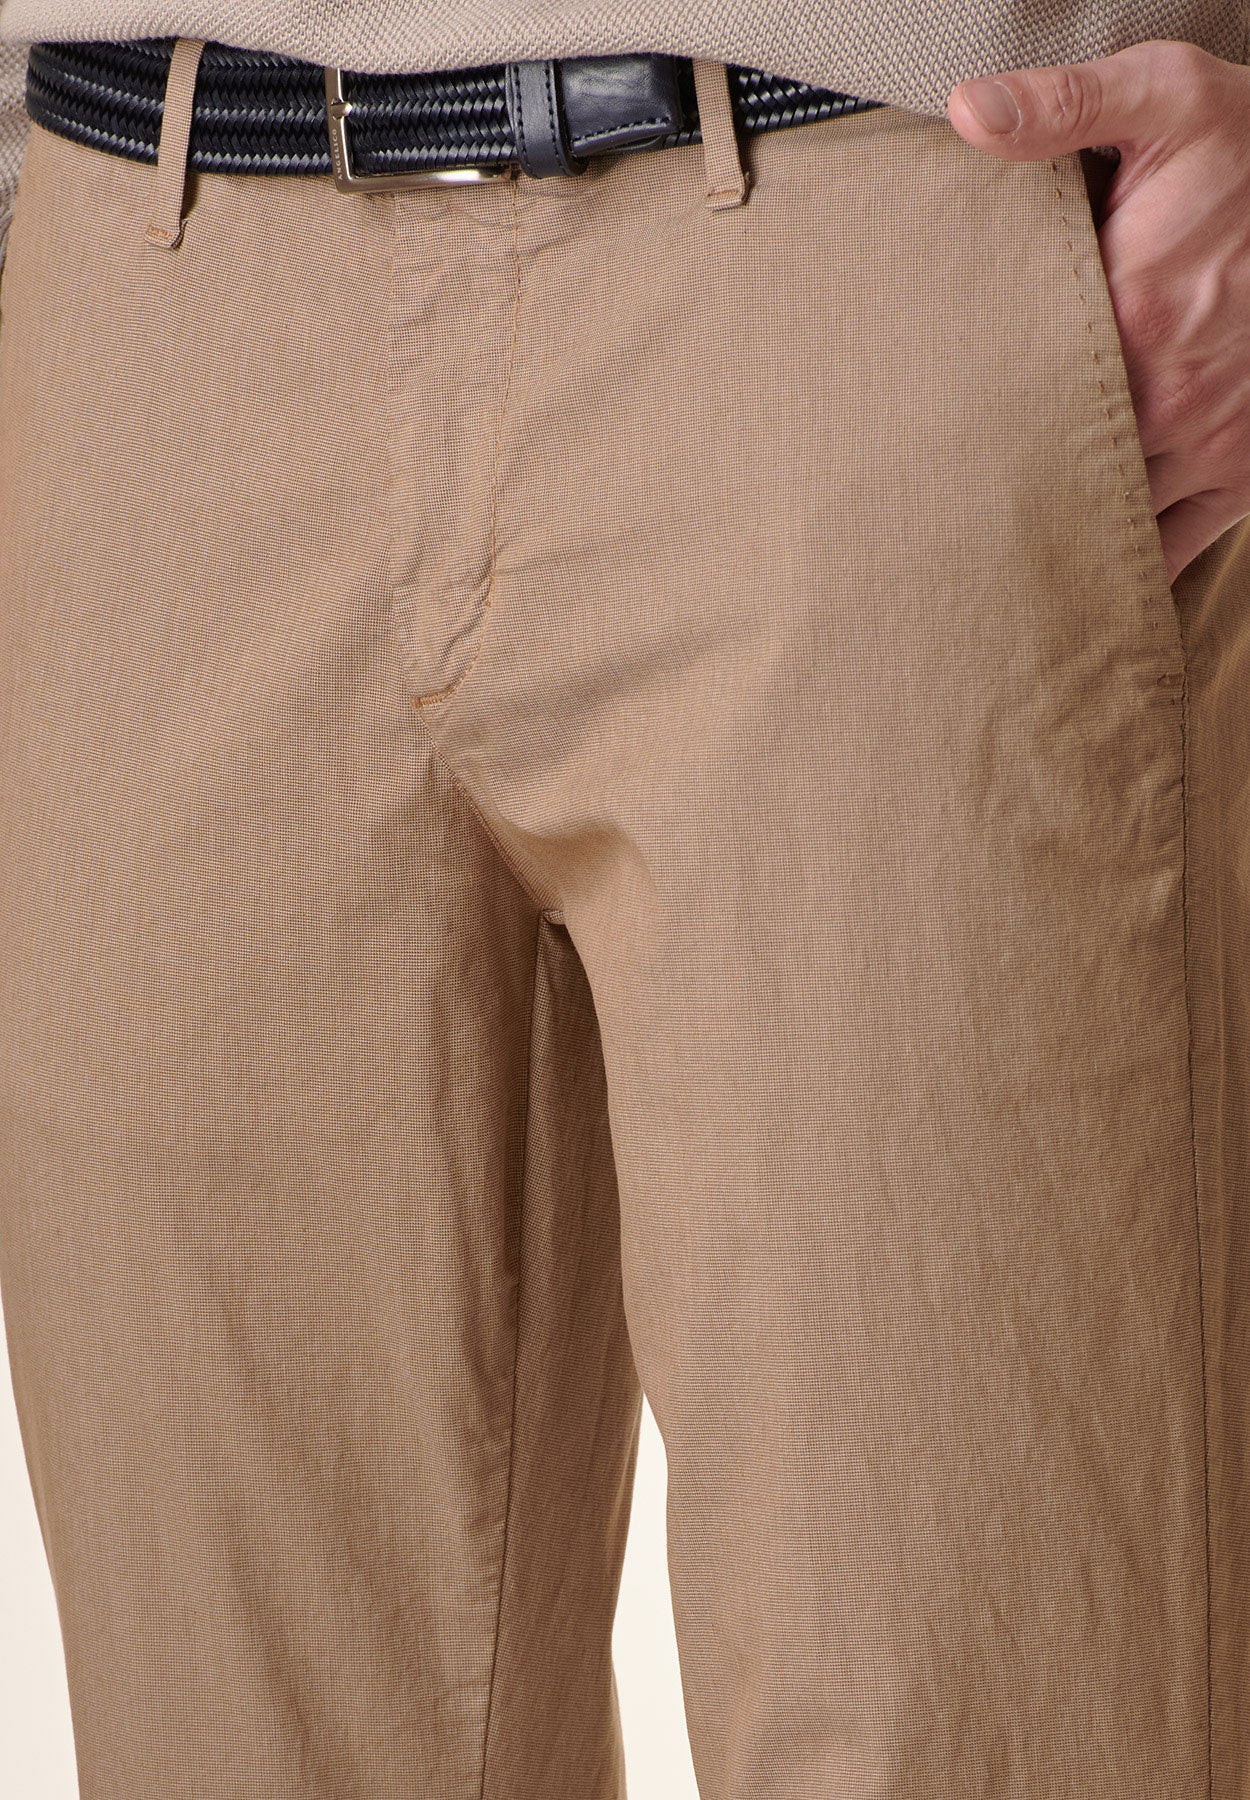 Kamelfarbene Hose mit normaler Passform aus Stretch-Baumwoll-Mikrogewebe